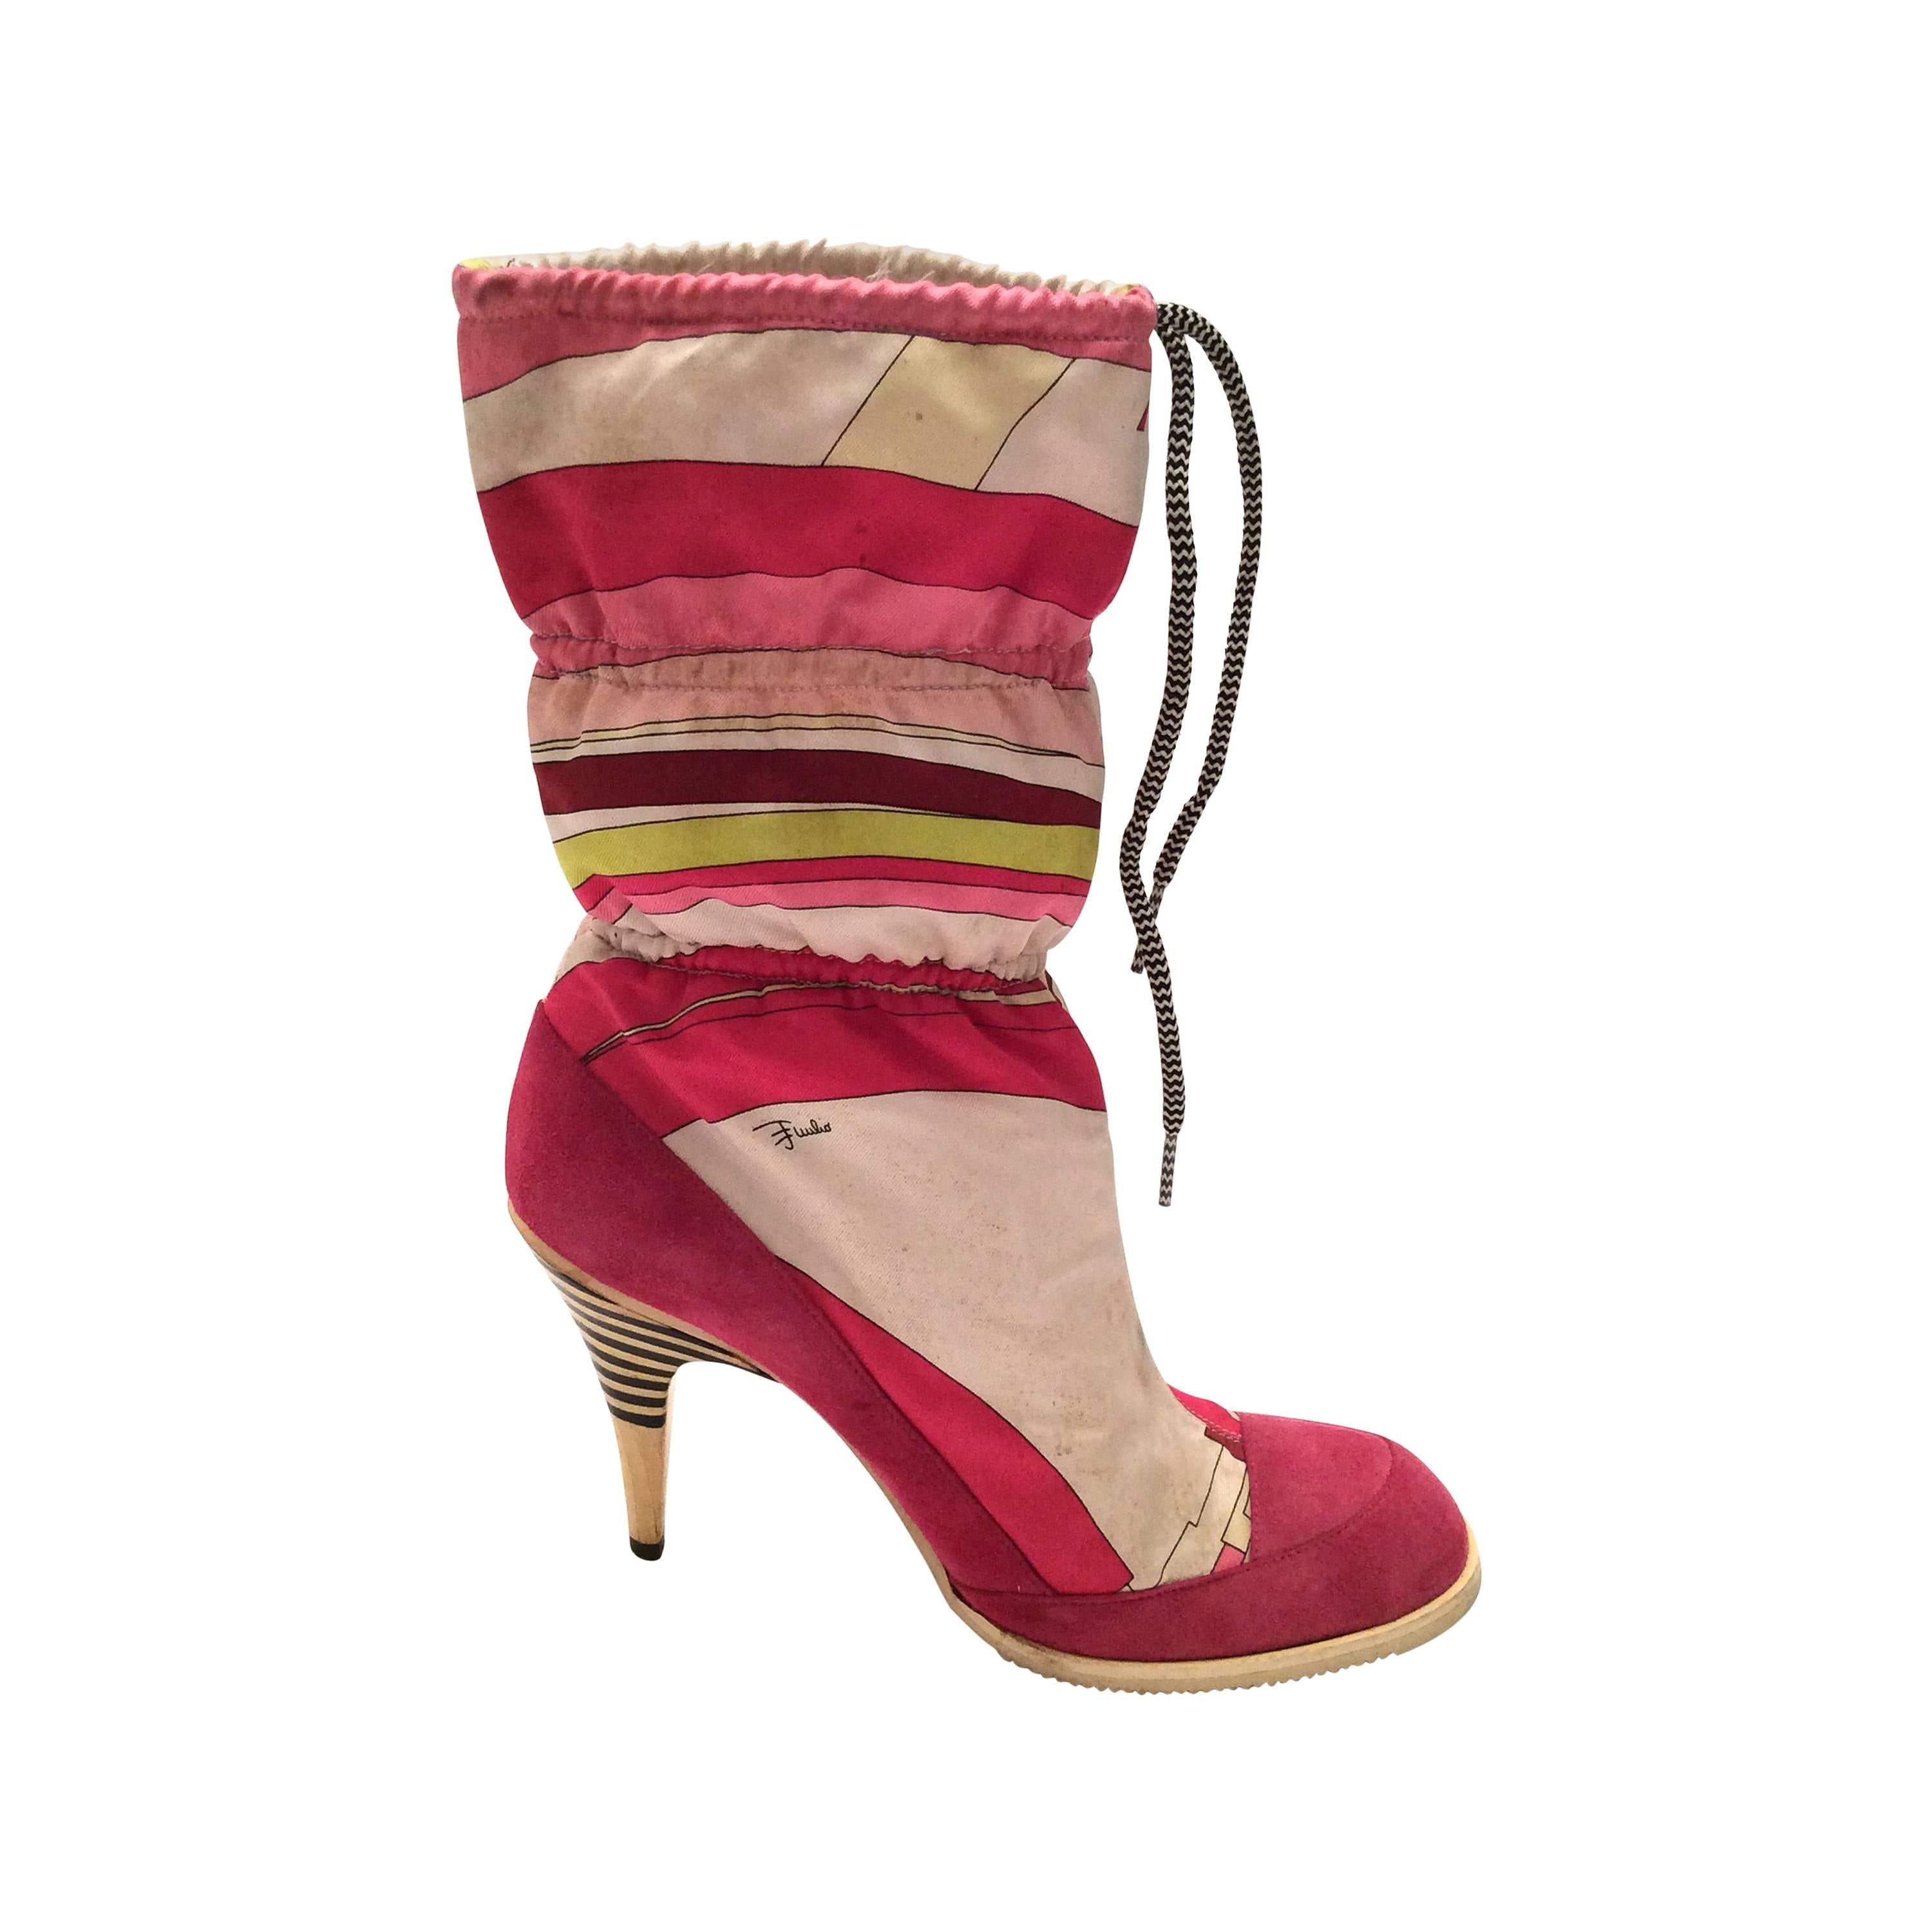 Emilio Pucci Vintage Boots - Size 38